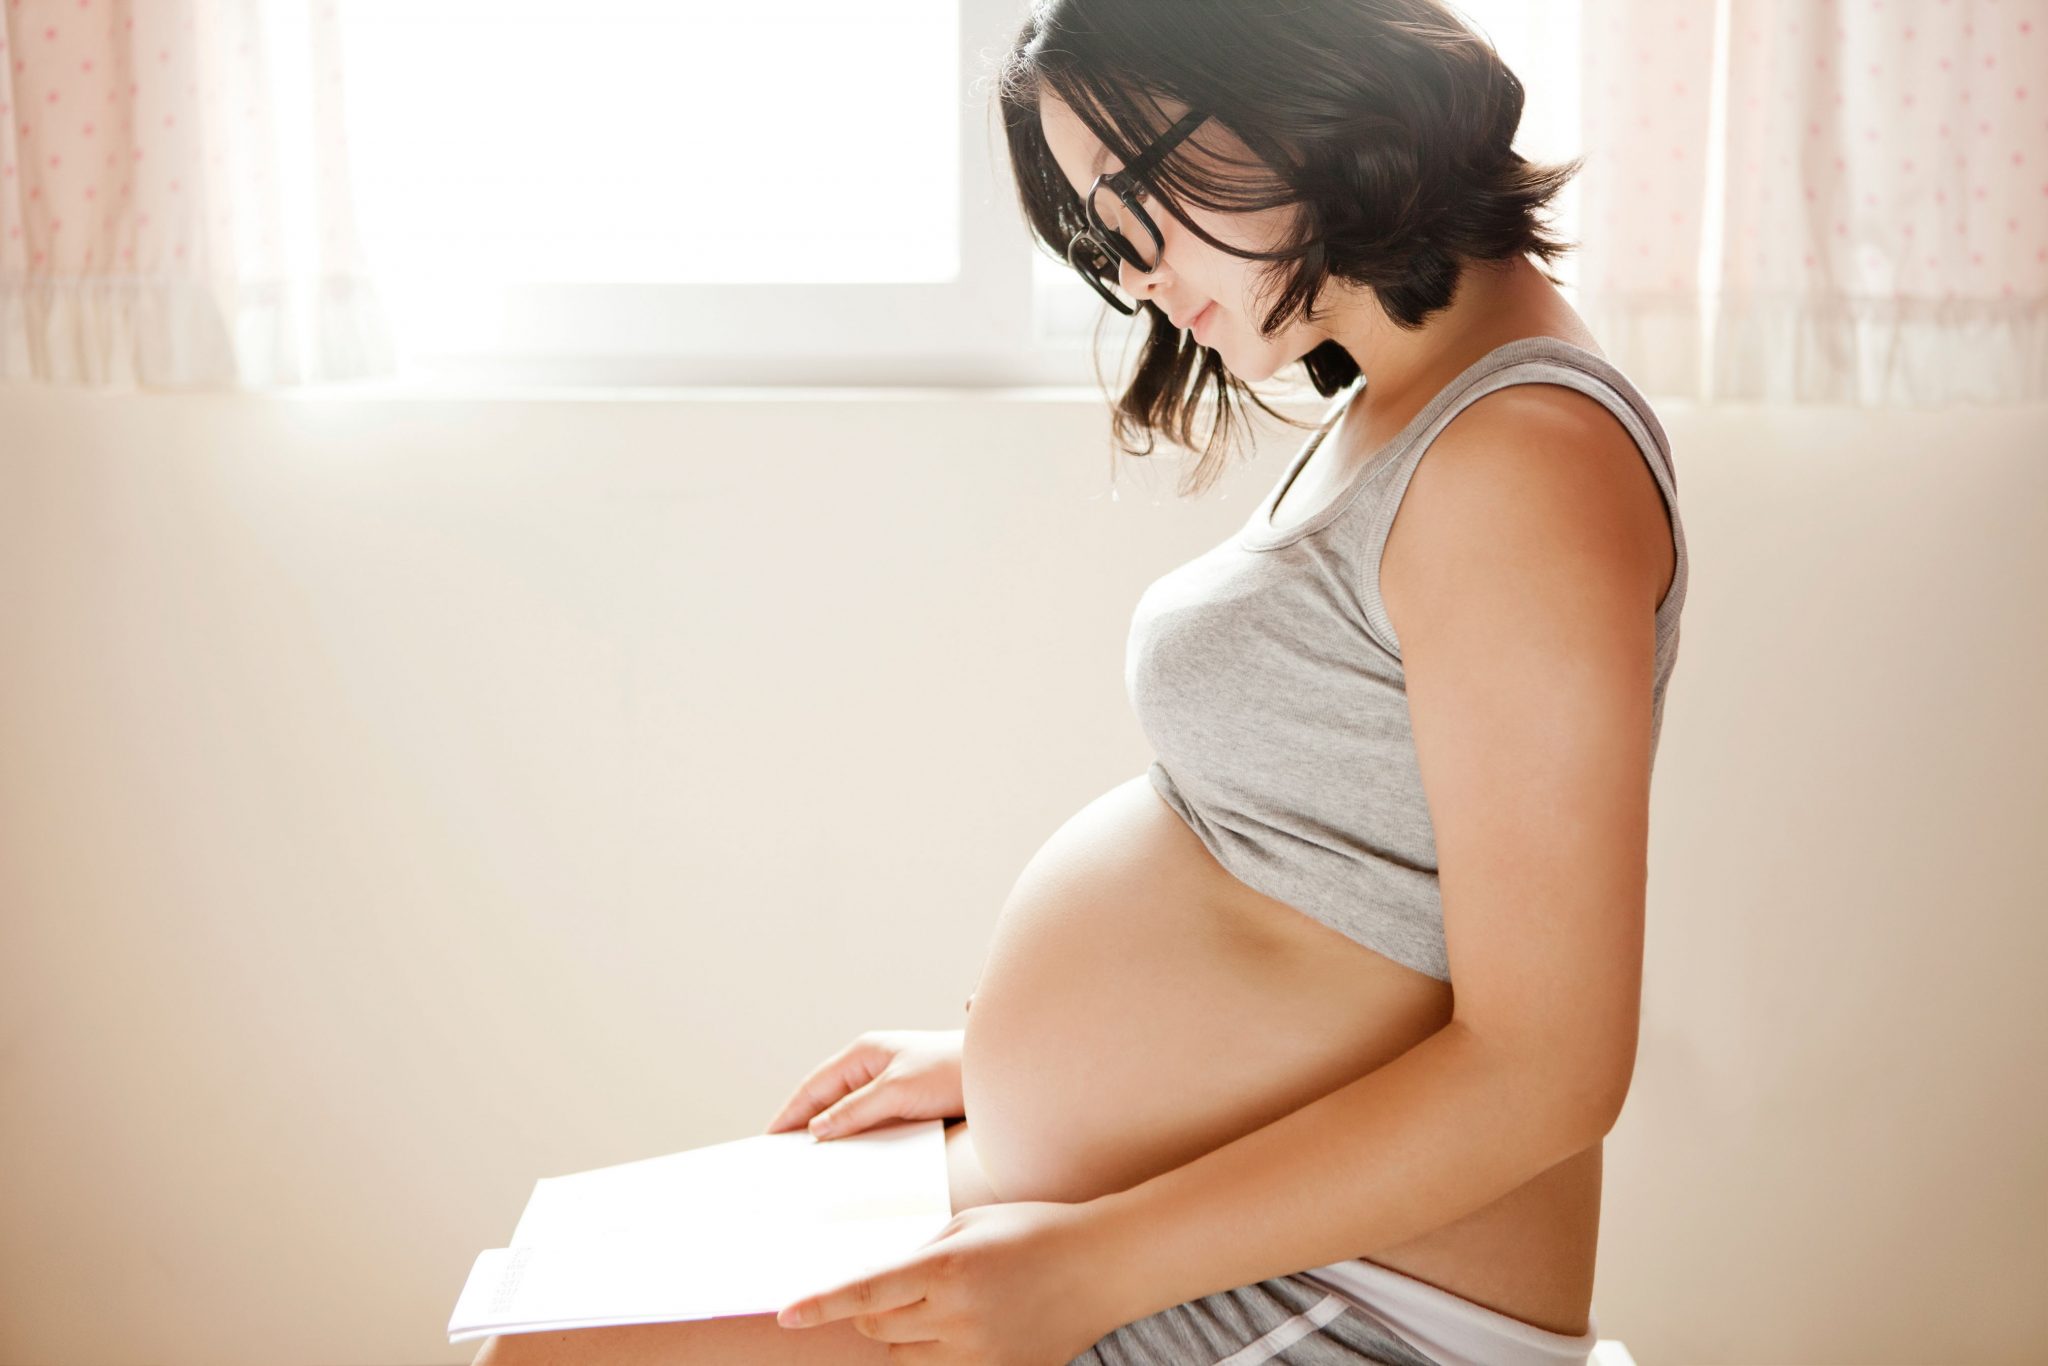 Desconto no parto com Plano de Saúde - Valor de planos de saúde